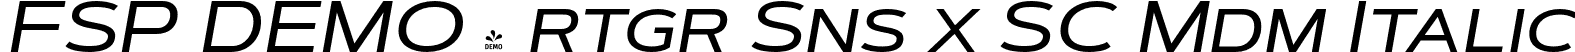 FSP DEMO - rtgr Sns x SC Mdm Italic font - Fontspring-DEMO-artegra_sans-extended-sc-500-medium-italic.otf